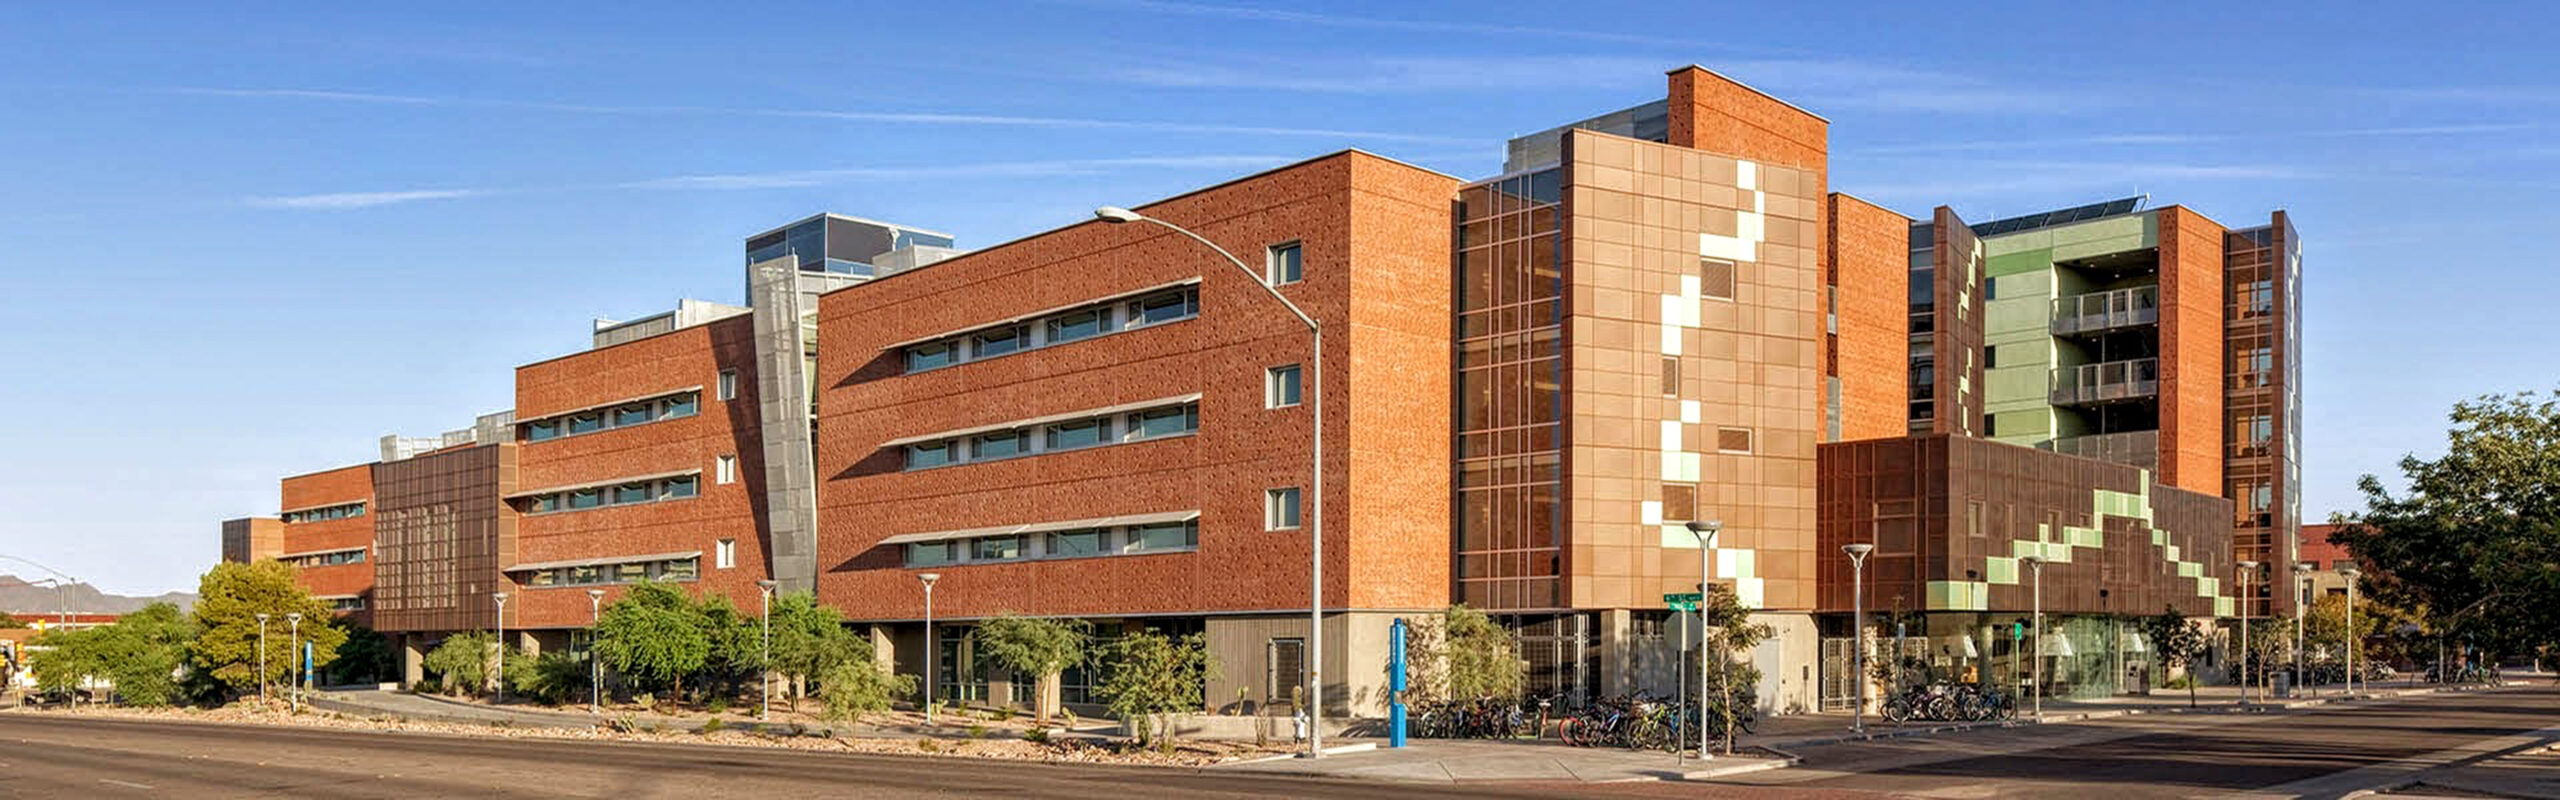 clinical research institute of arizona